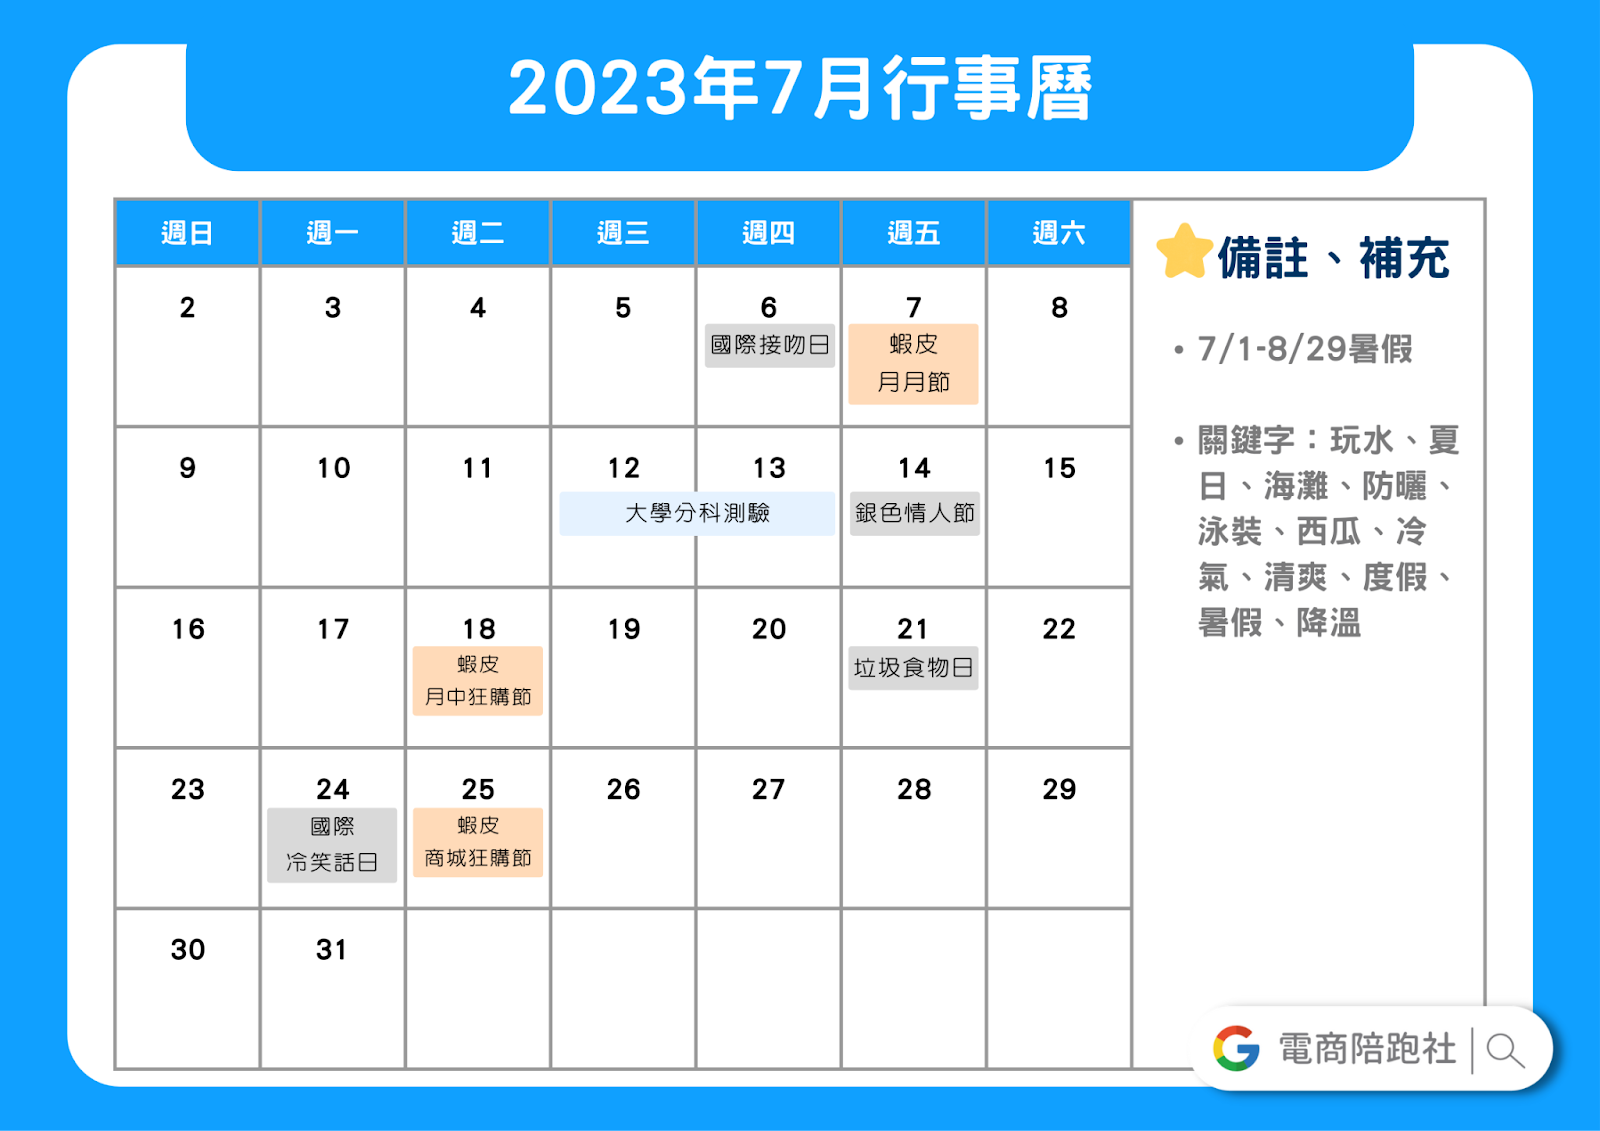 2023節慶行銷行事曆-7 月